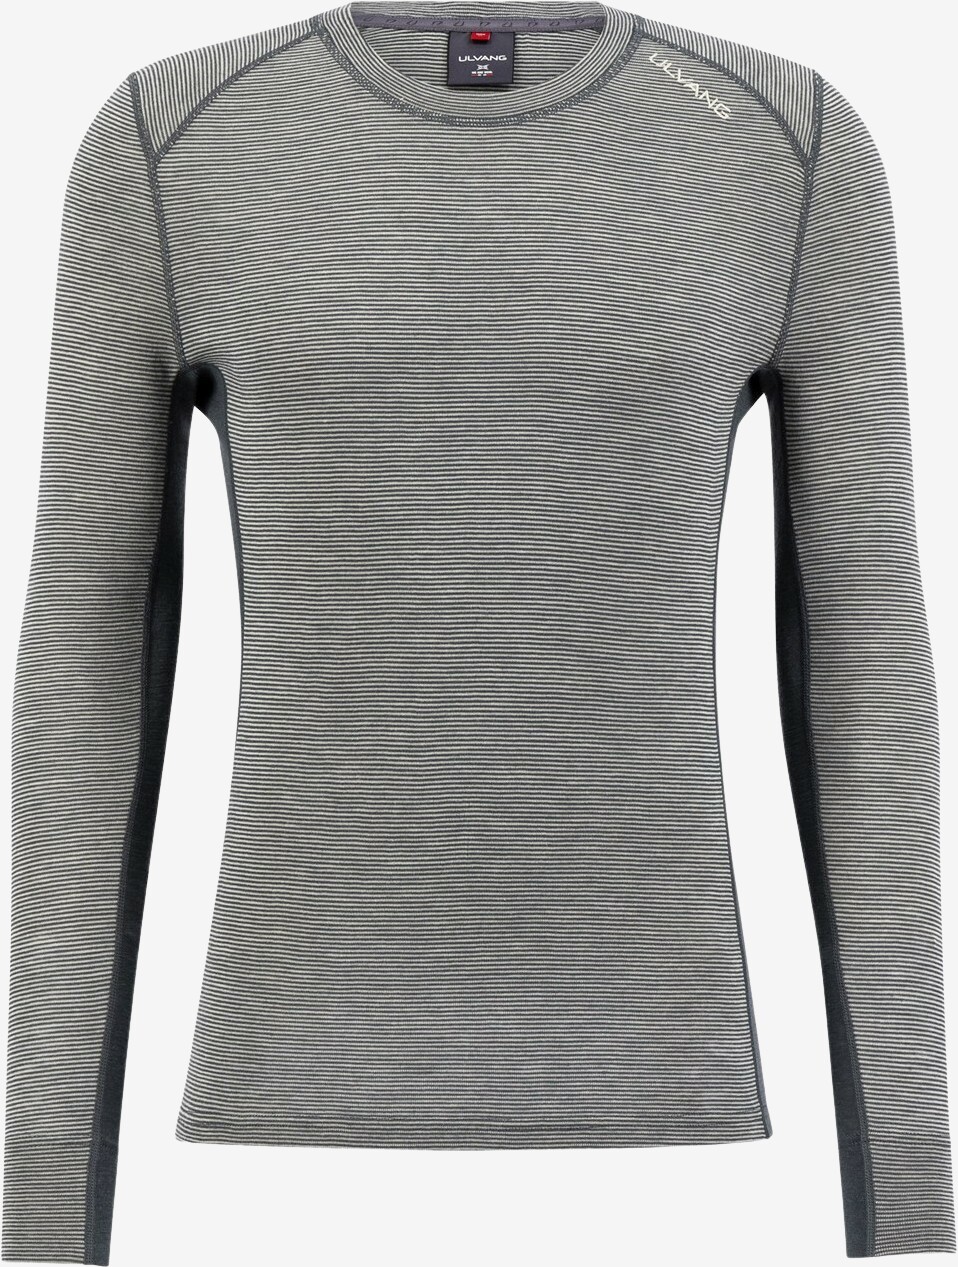 Ulvang - Rav 100% trøje (Grå) - XL